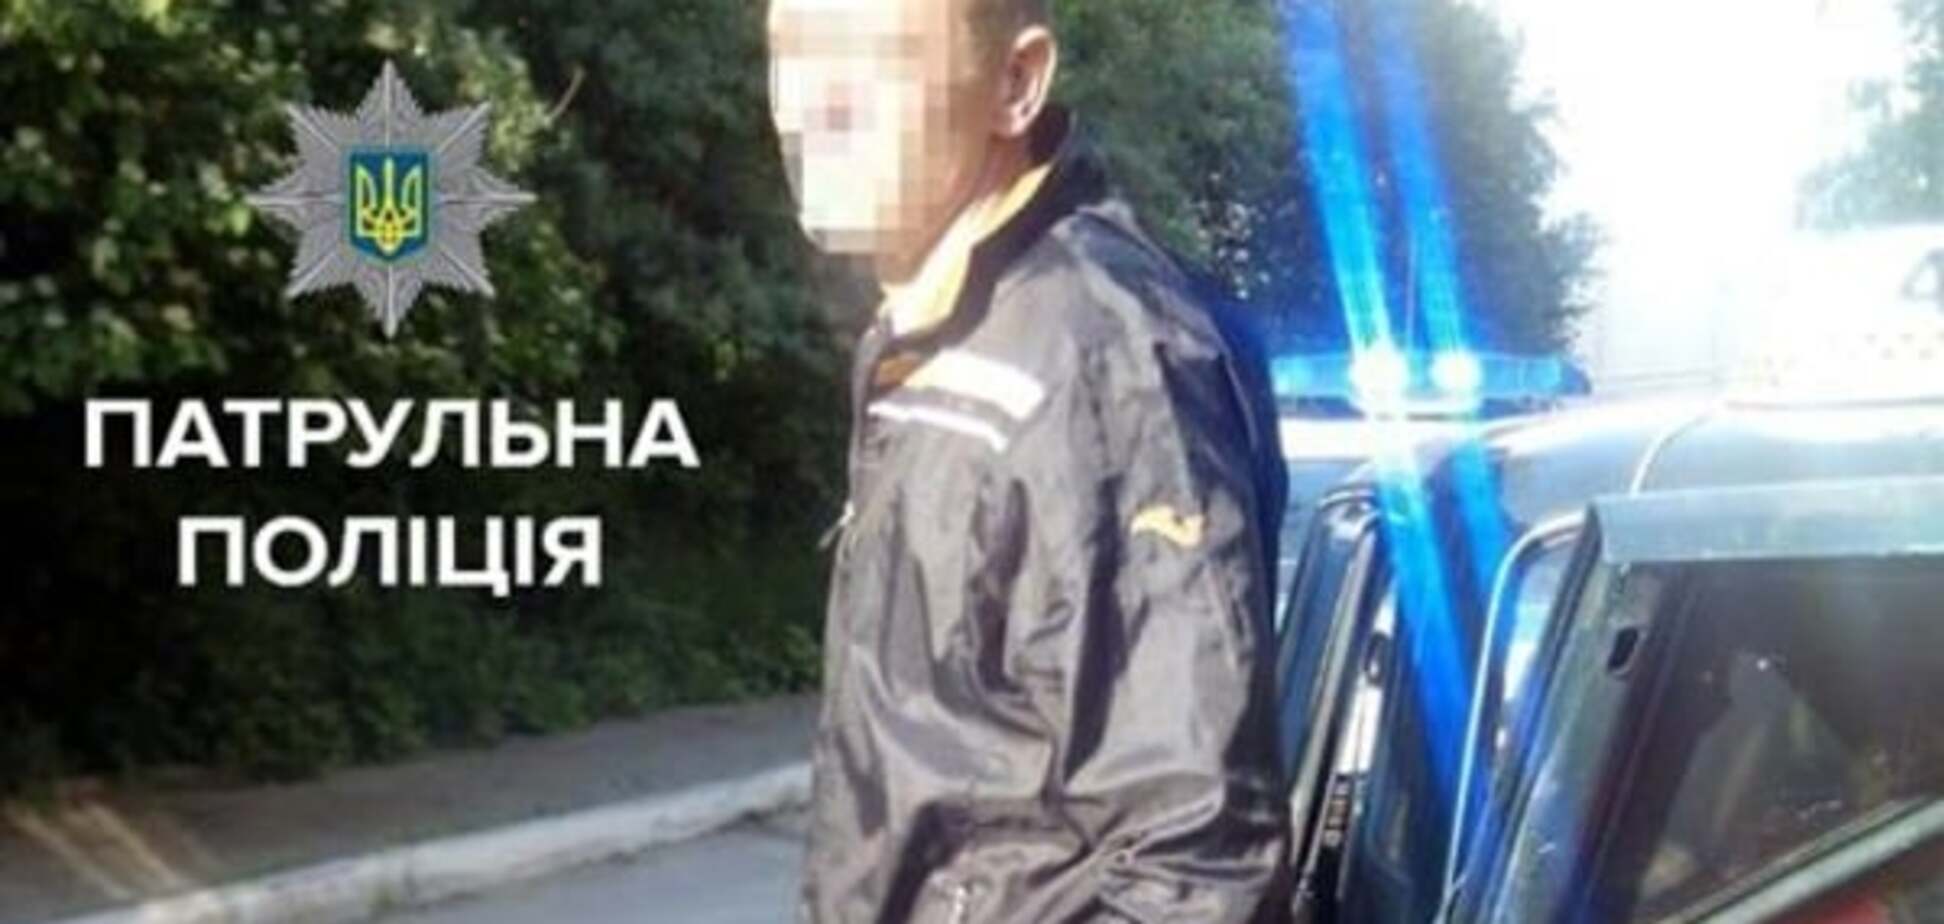 Затримано по гарячих слідах: у Тернополі таксист-наркоман грабував автомобілі. Фото